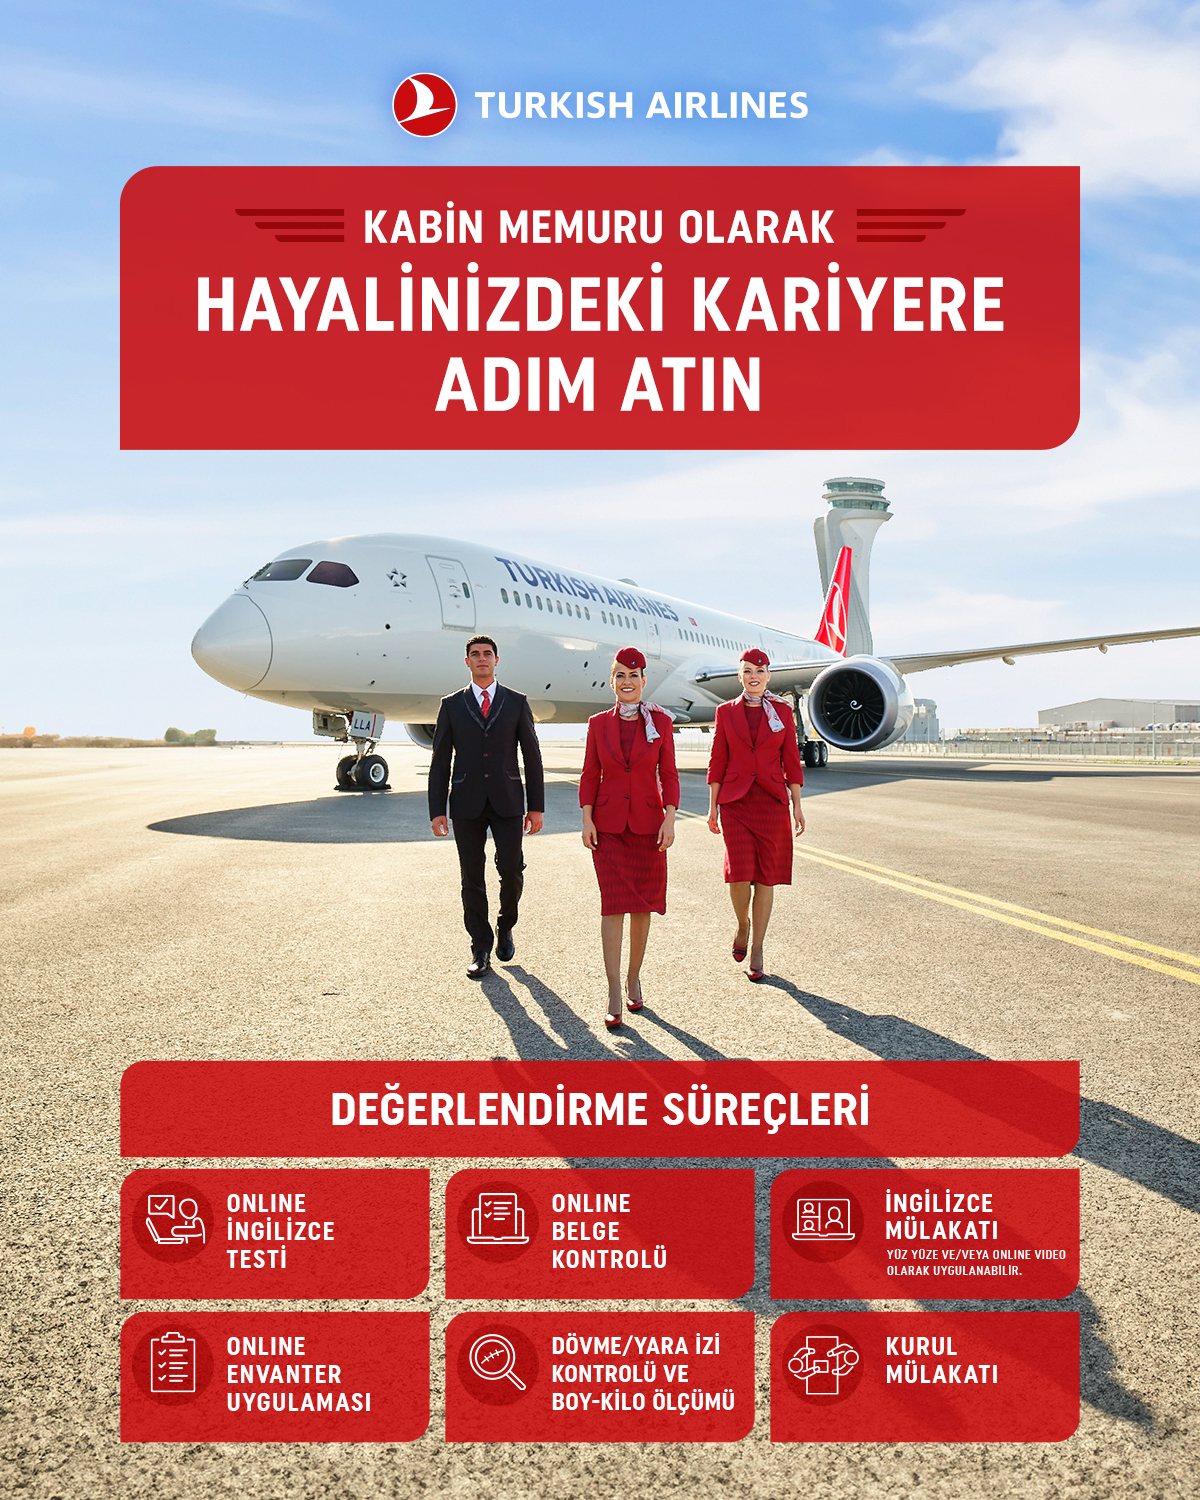 1200x1500-Turkish-Airlines-Insan-Kaynaklari-Yeni-Kabin-Memuru-Ilani-TR-rev.jpg (1.42 MB)